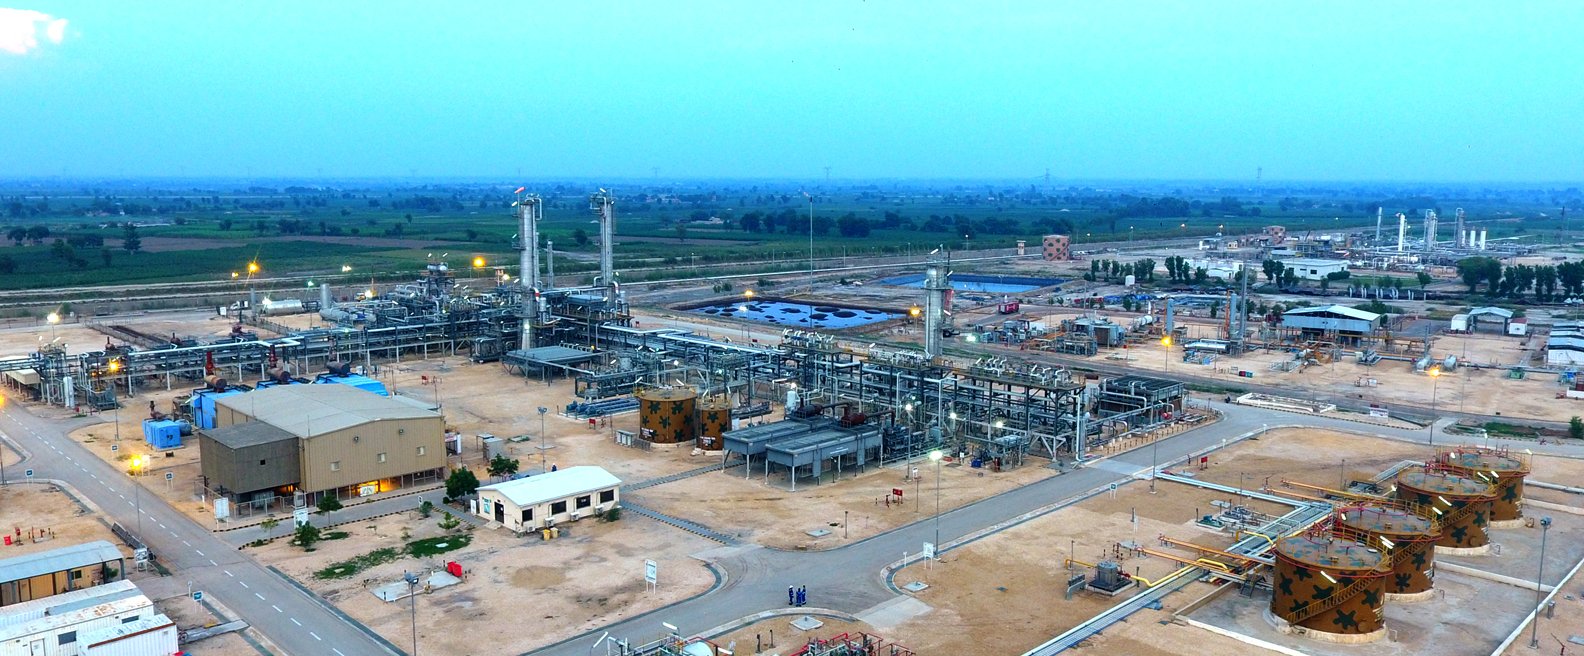 Gas Processing Facilities at Gambat South Block Sindh